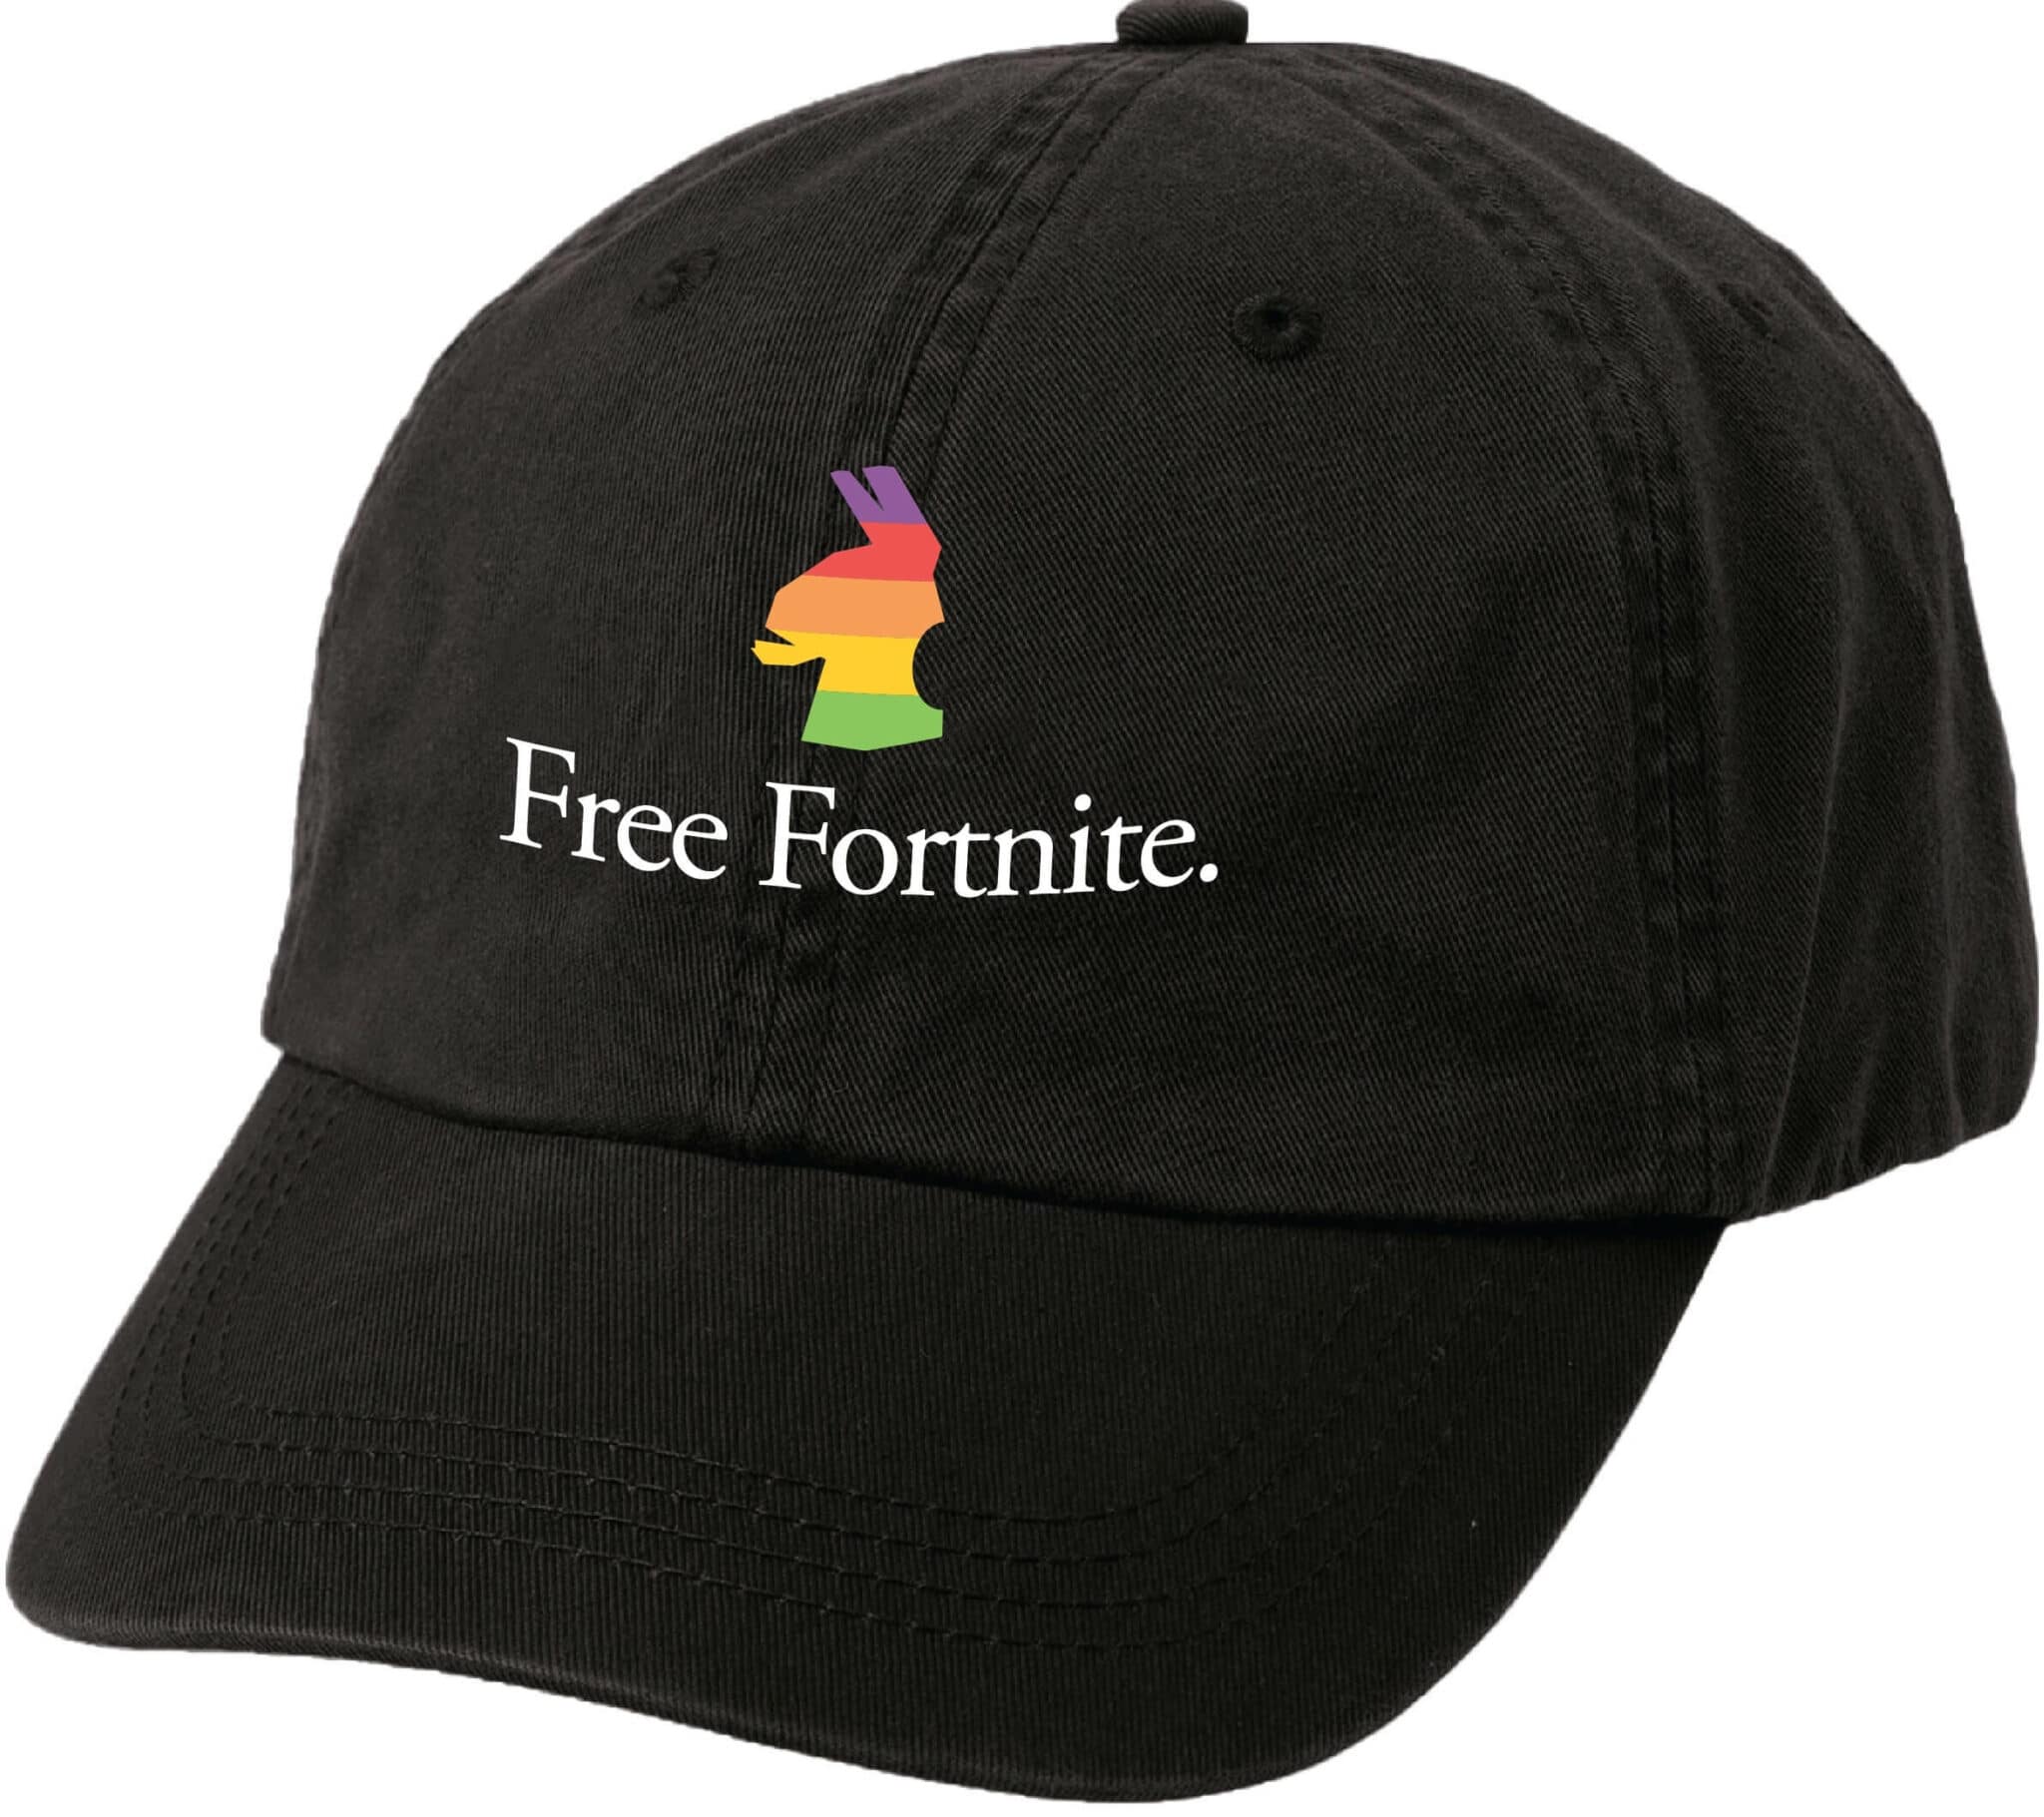 Free Fortnite Apple Cap